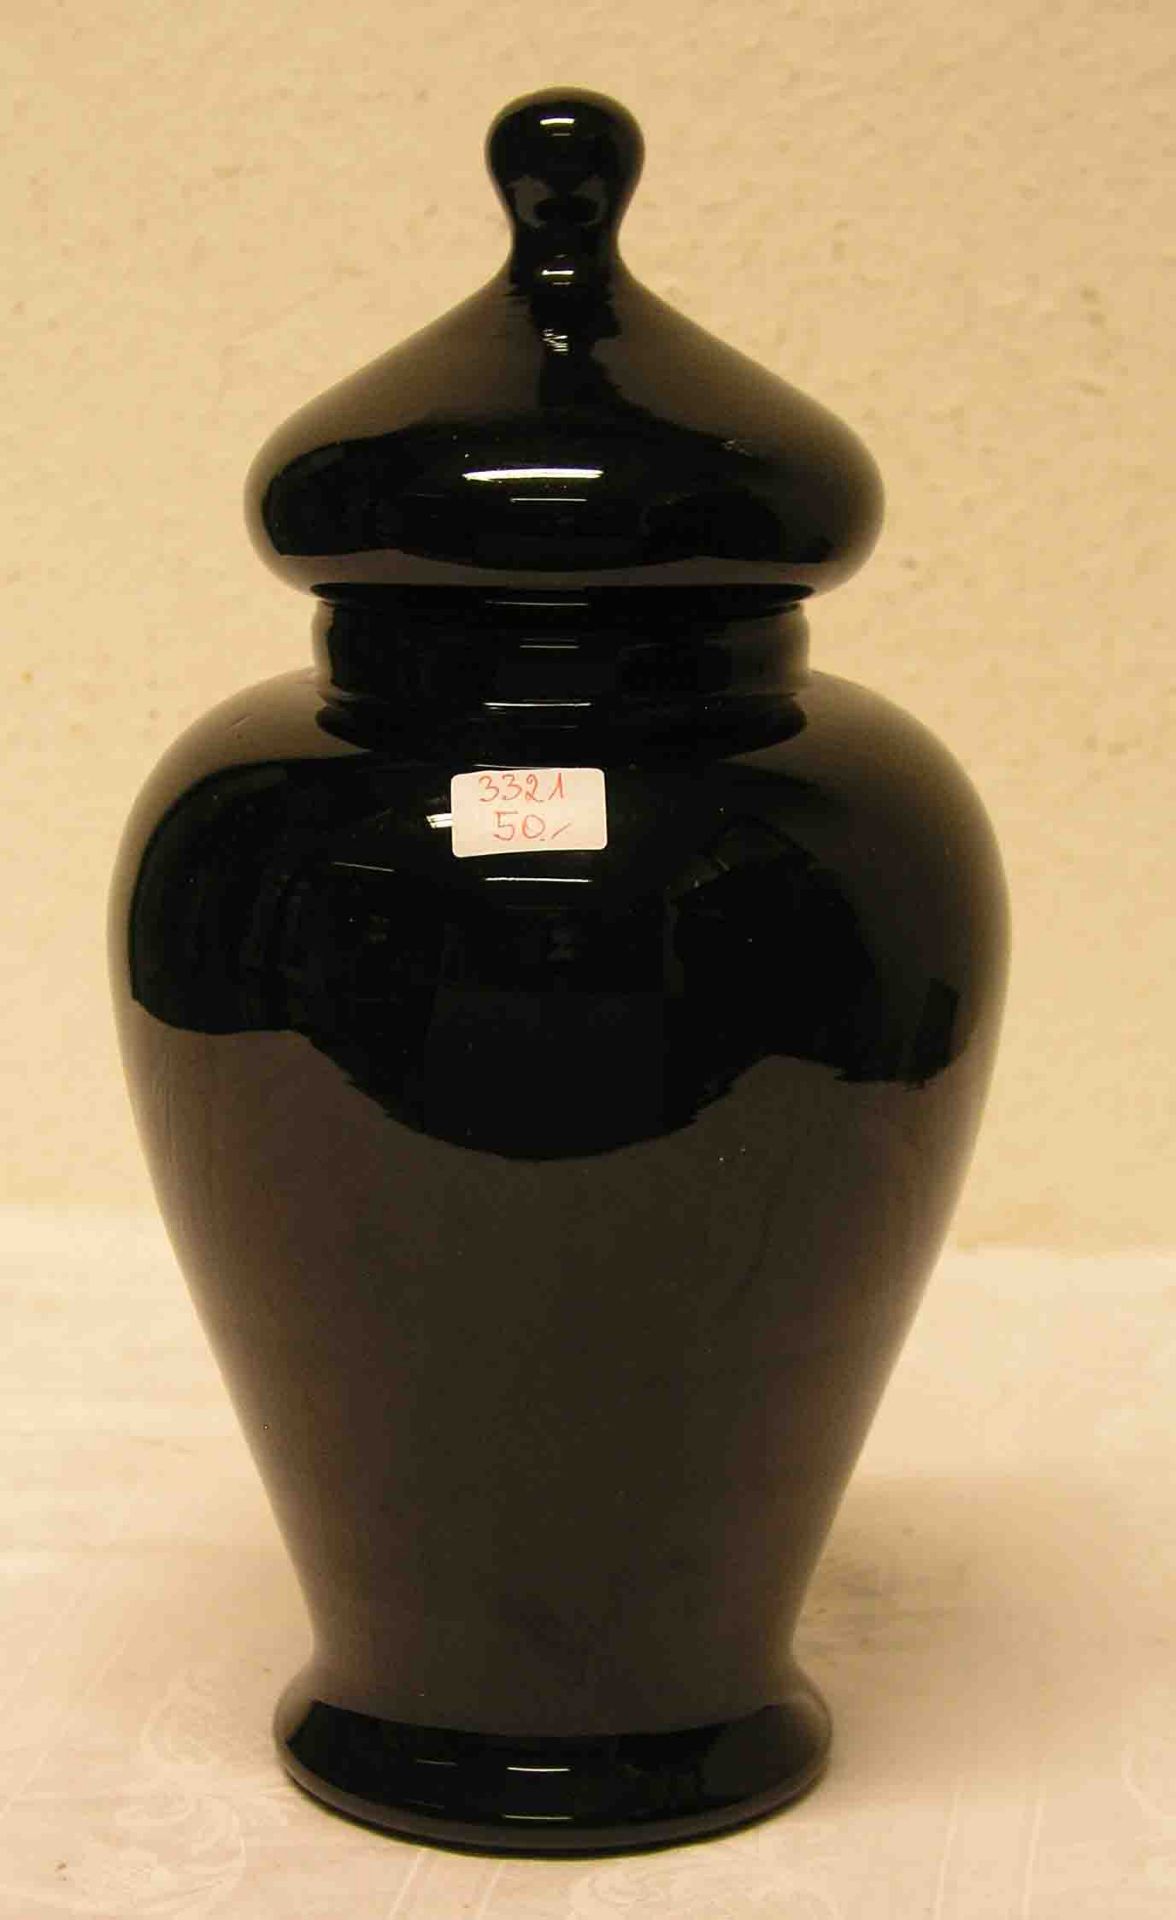 Deckelvase. Frankreich um 1925. Schwarzes Rubinglas, Balusterform, hohl geblasener Deckelmit kleinem